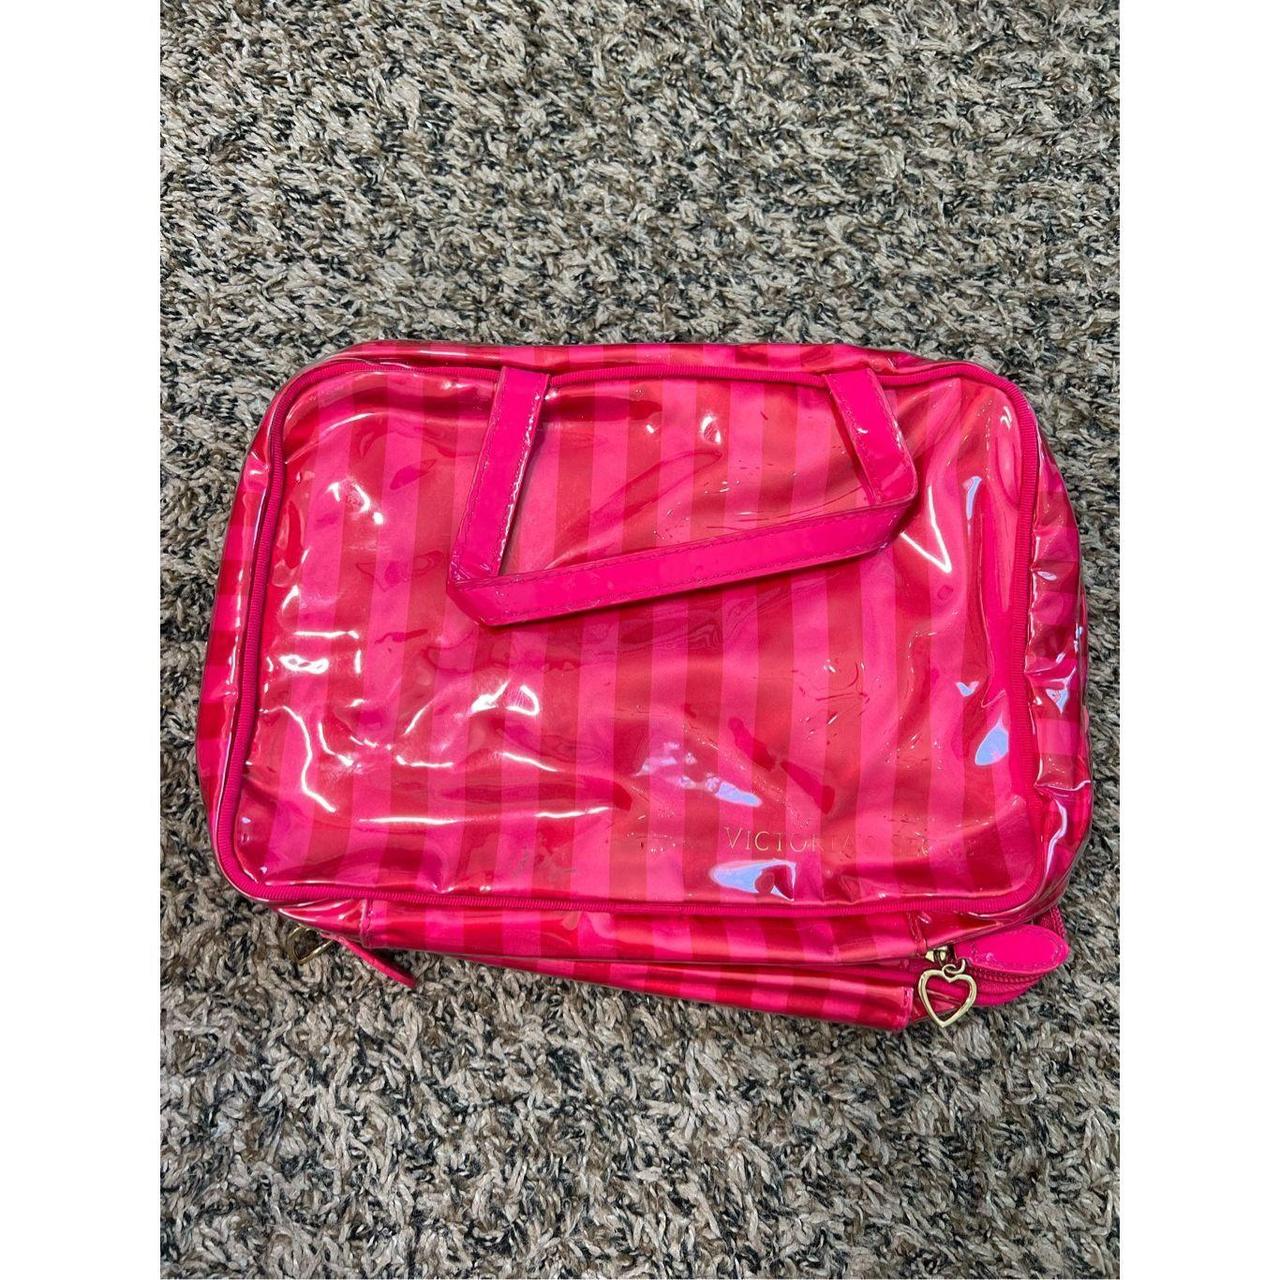 travel victoria secret bag